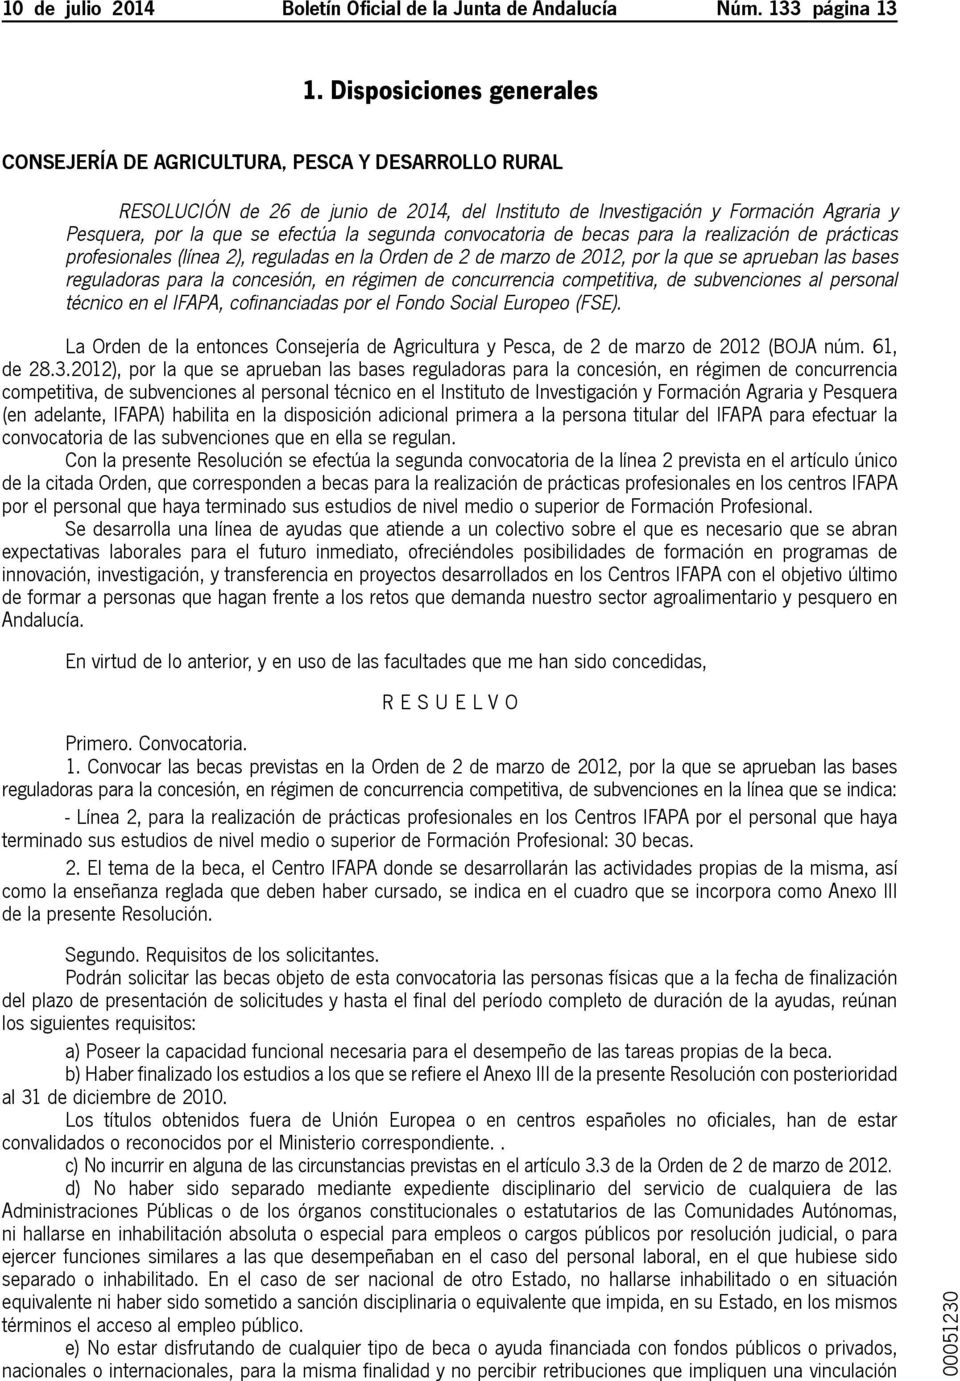 convocatoria de becas para la realización de prácticas profesionales (línea 2), reguladas en la Orden de 2 de marzo de 2012, por la que se aprueban las bases reguladoras para la concesión, en régimen